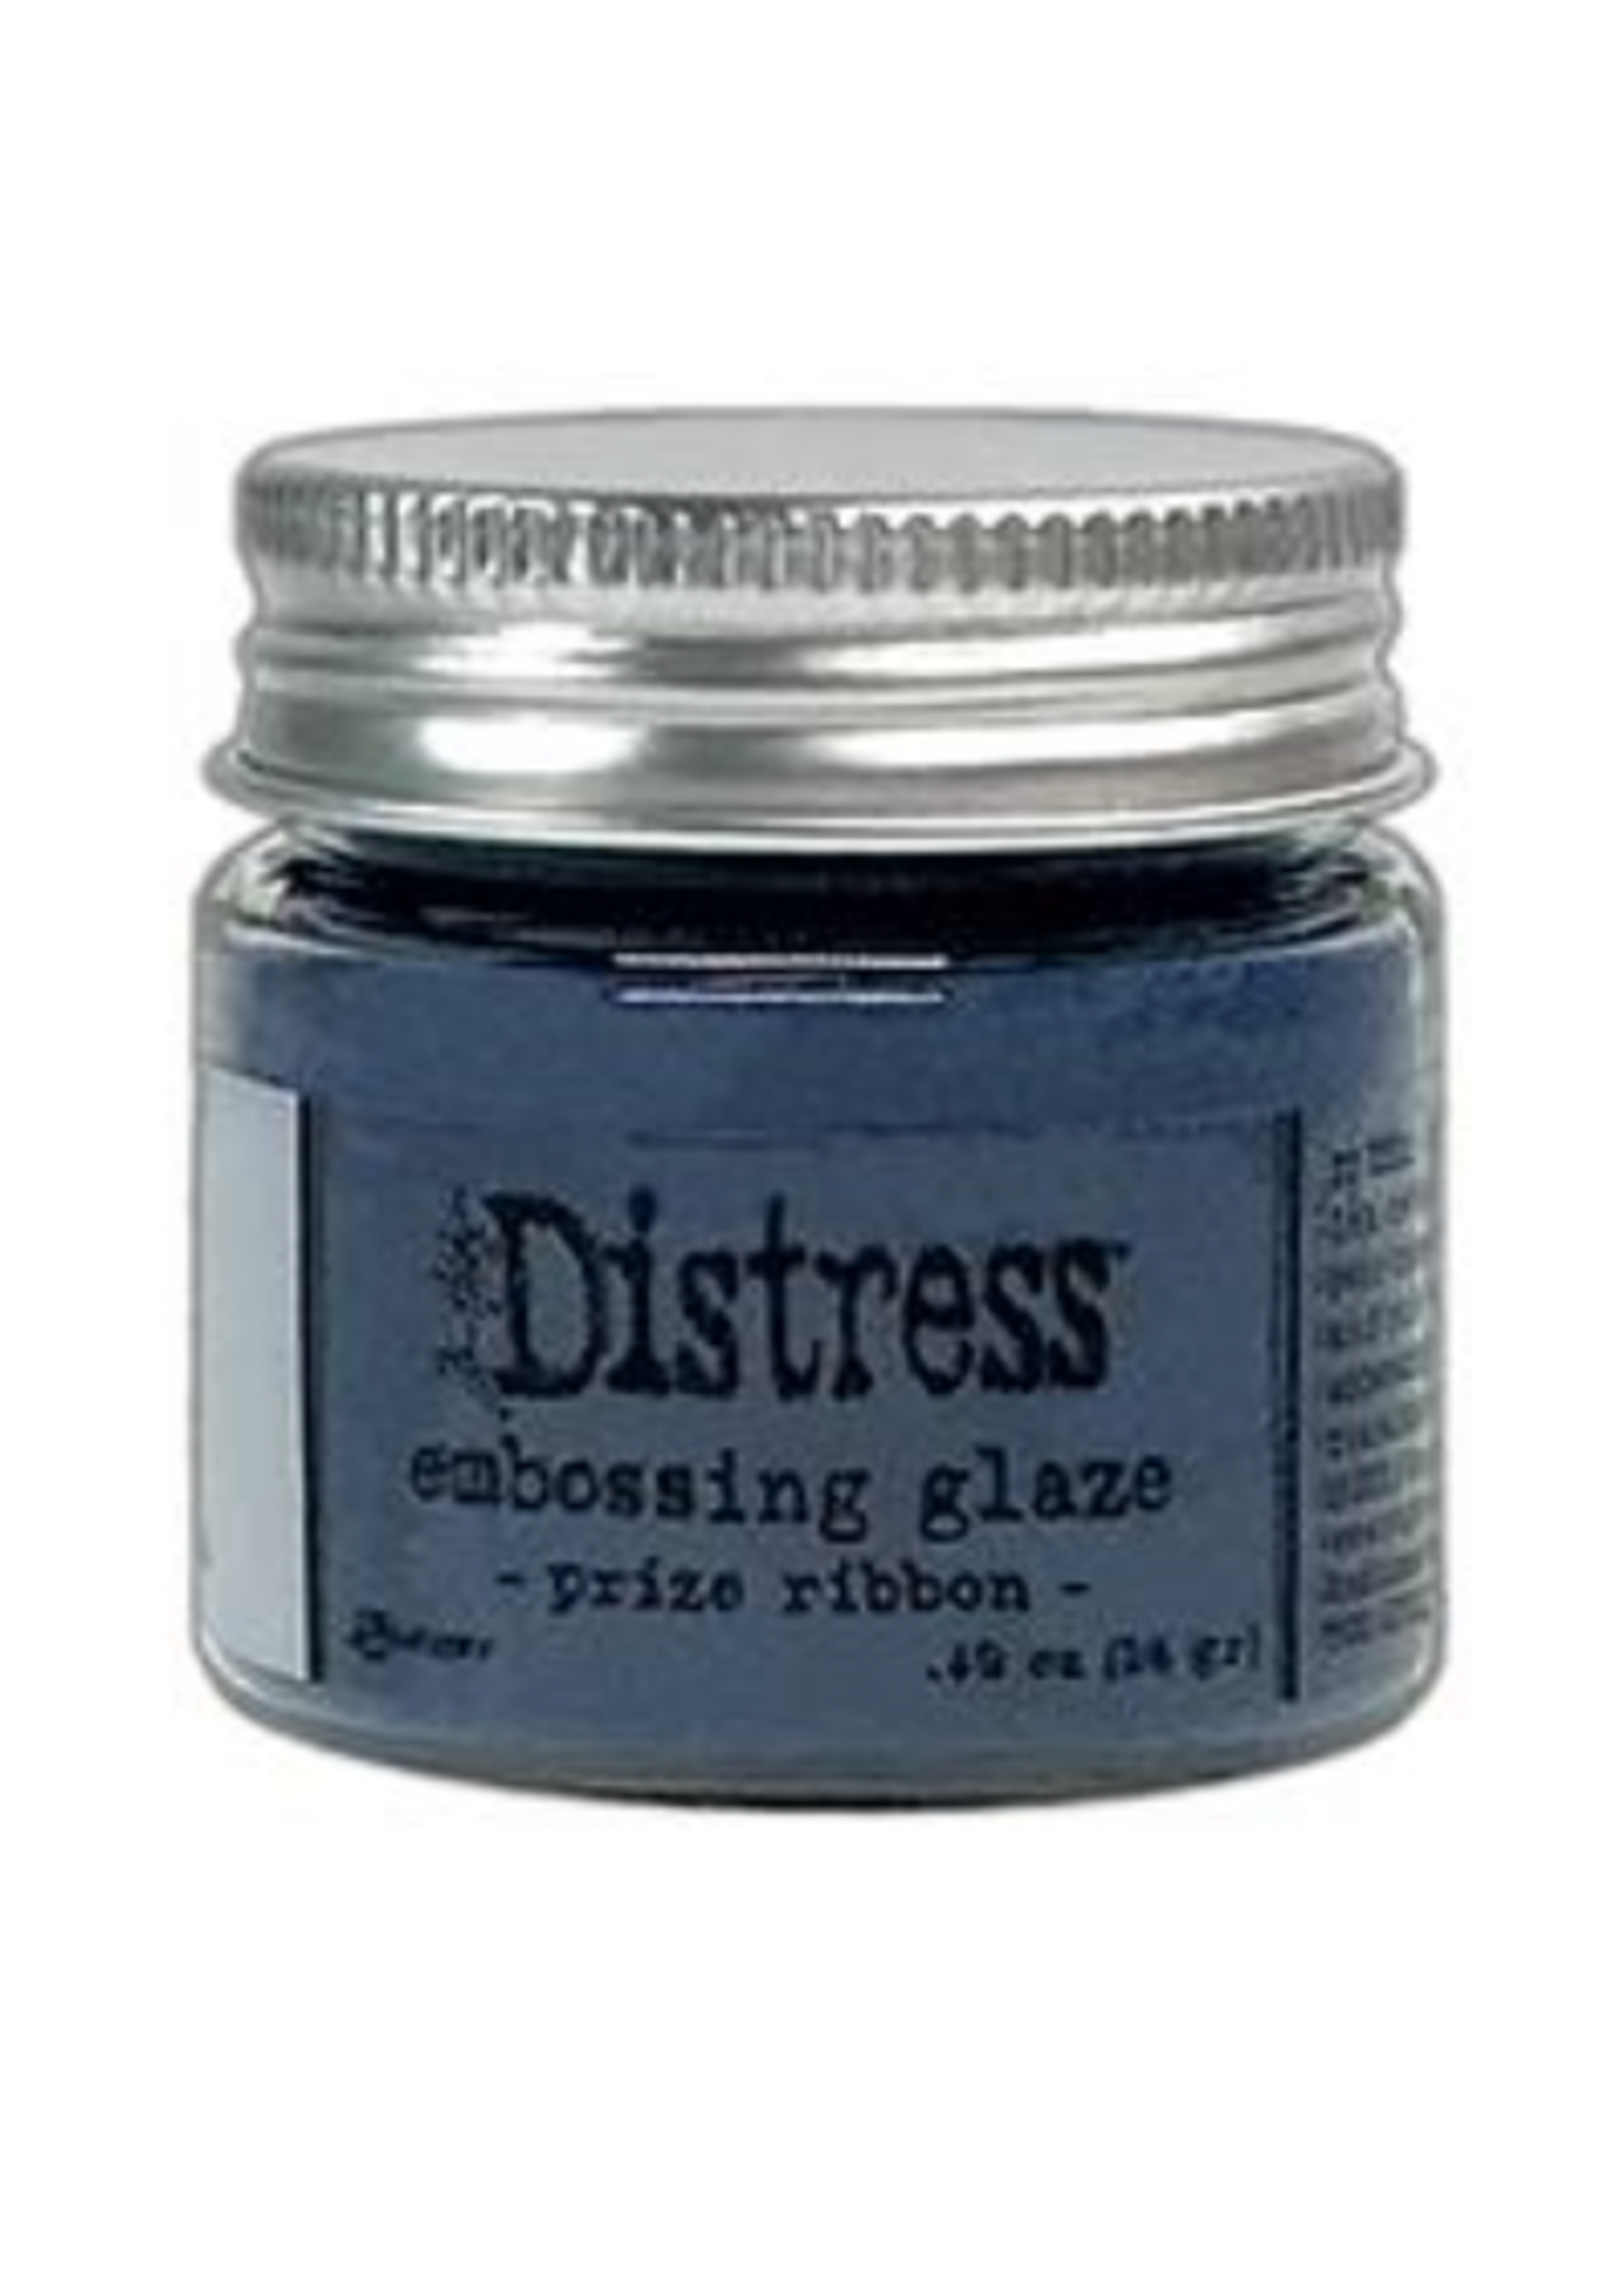 RANGER Distress Embossing Glaze: Prize Ribbon